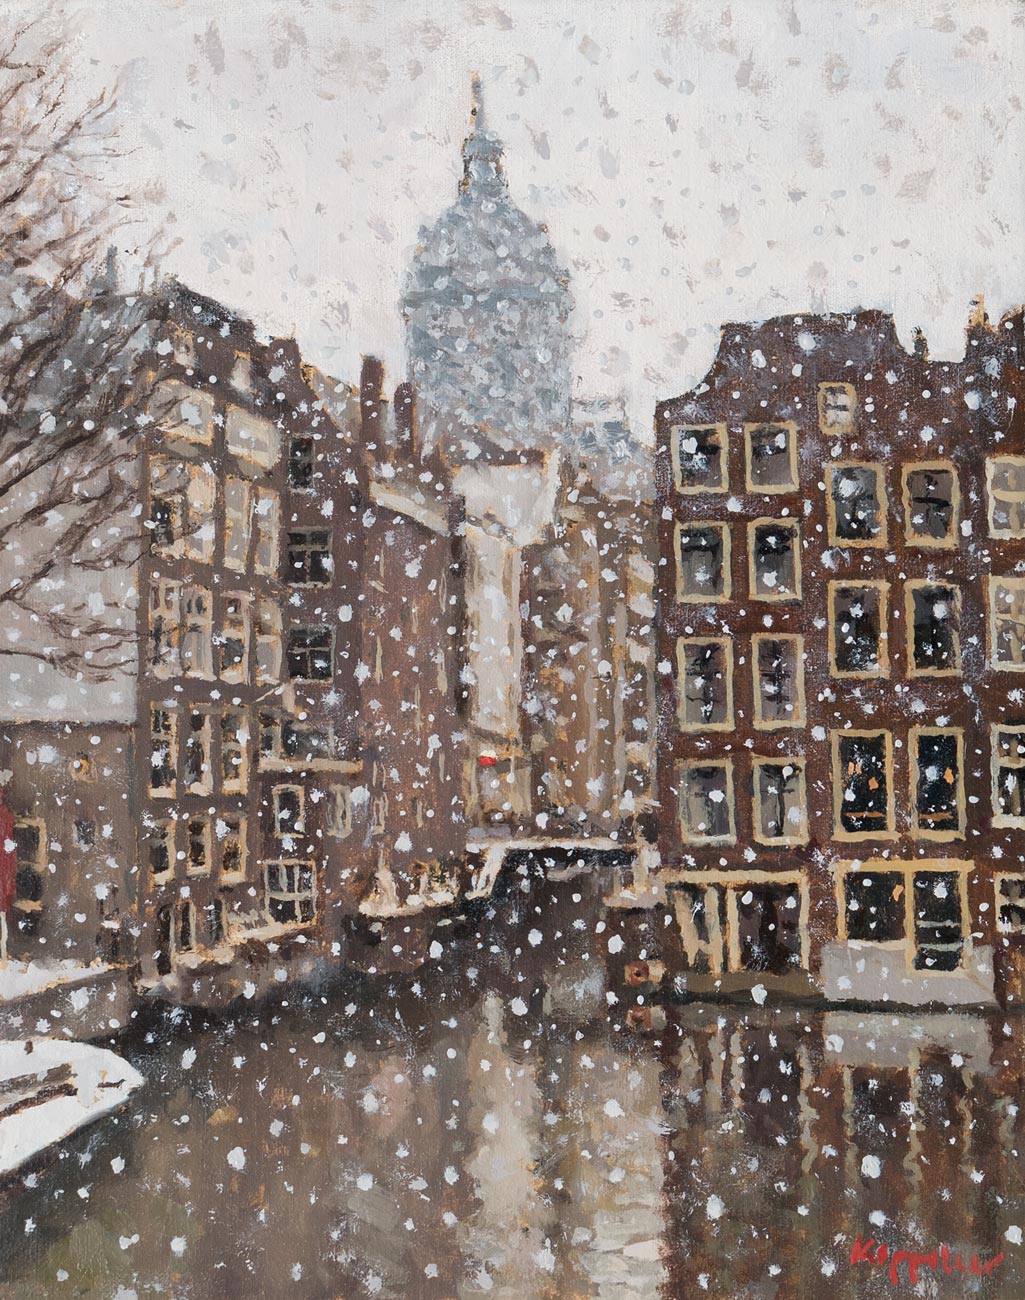 stadsgezicht: 'Het Kolkje met sneeuw' olieverf op linnen door kunstschilder Frans Koppelaar.